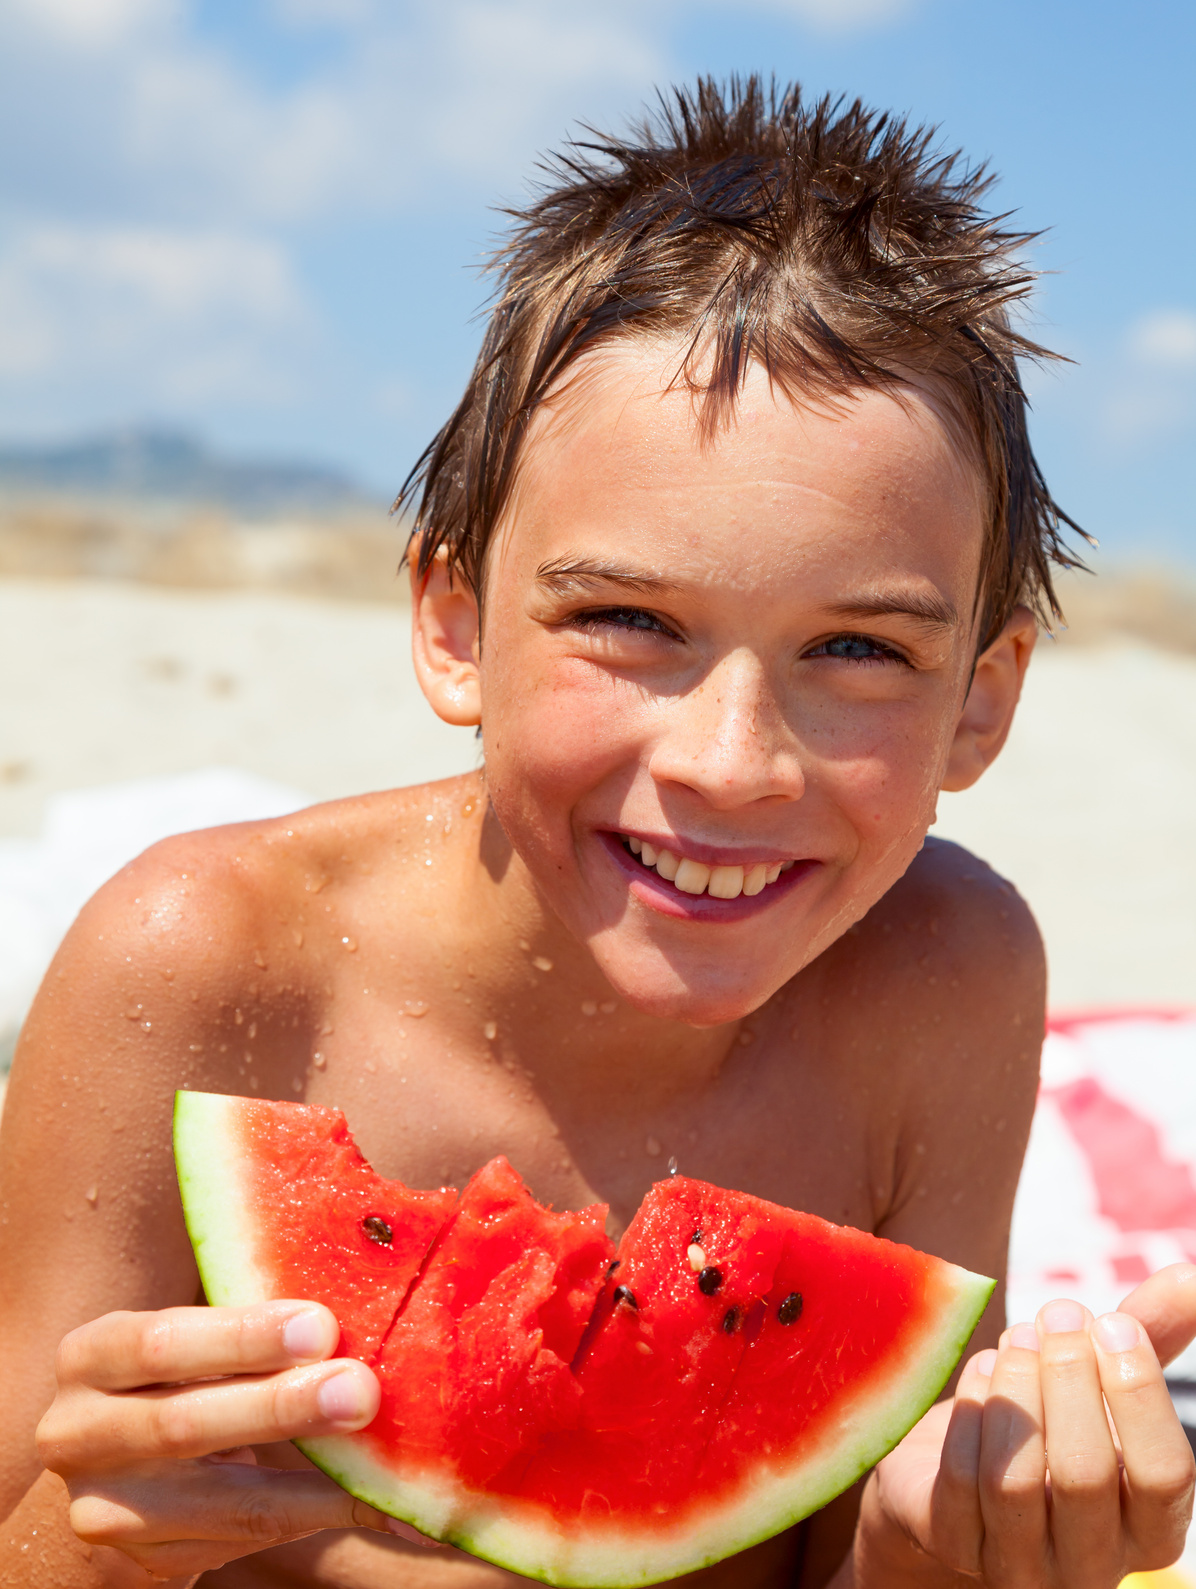 Boy eating melon on a beach